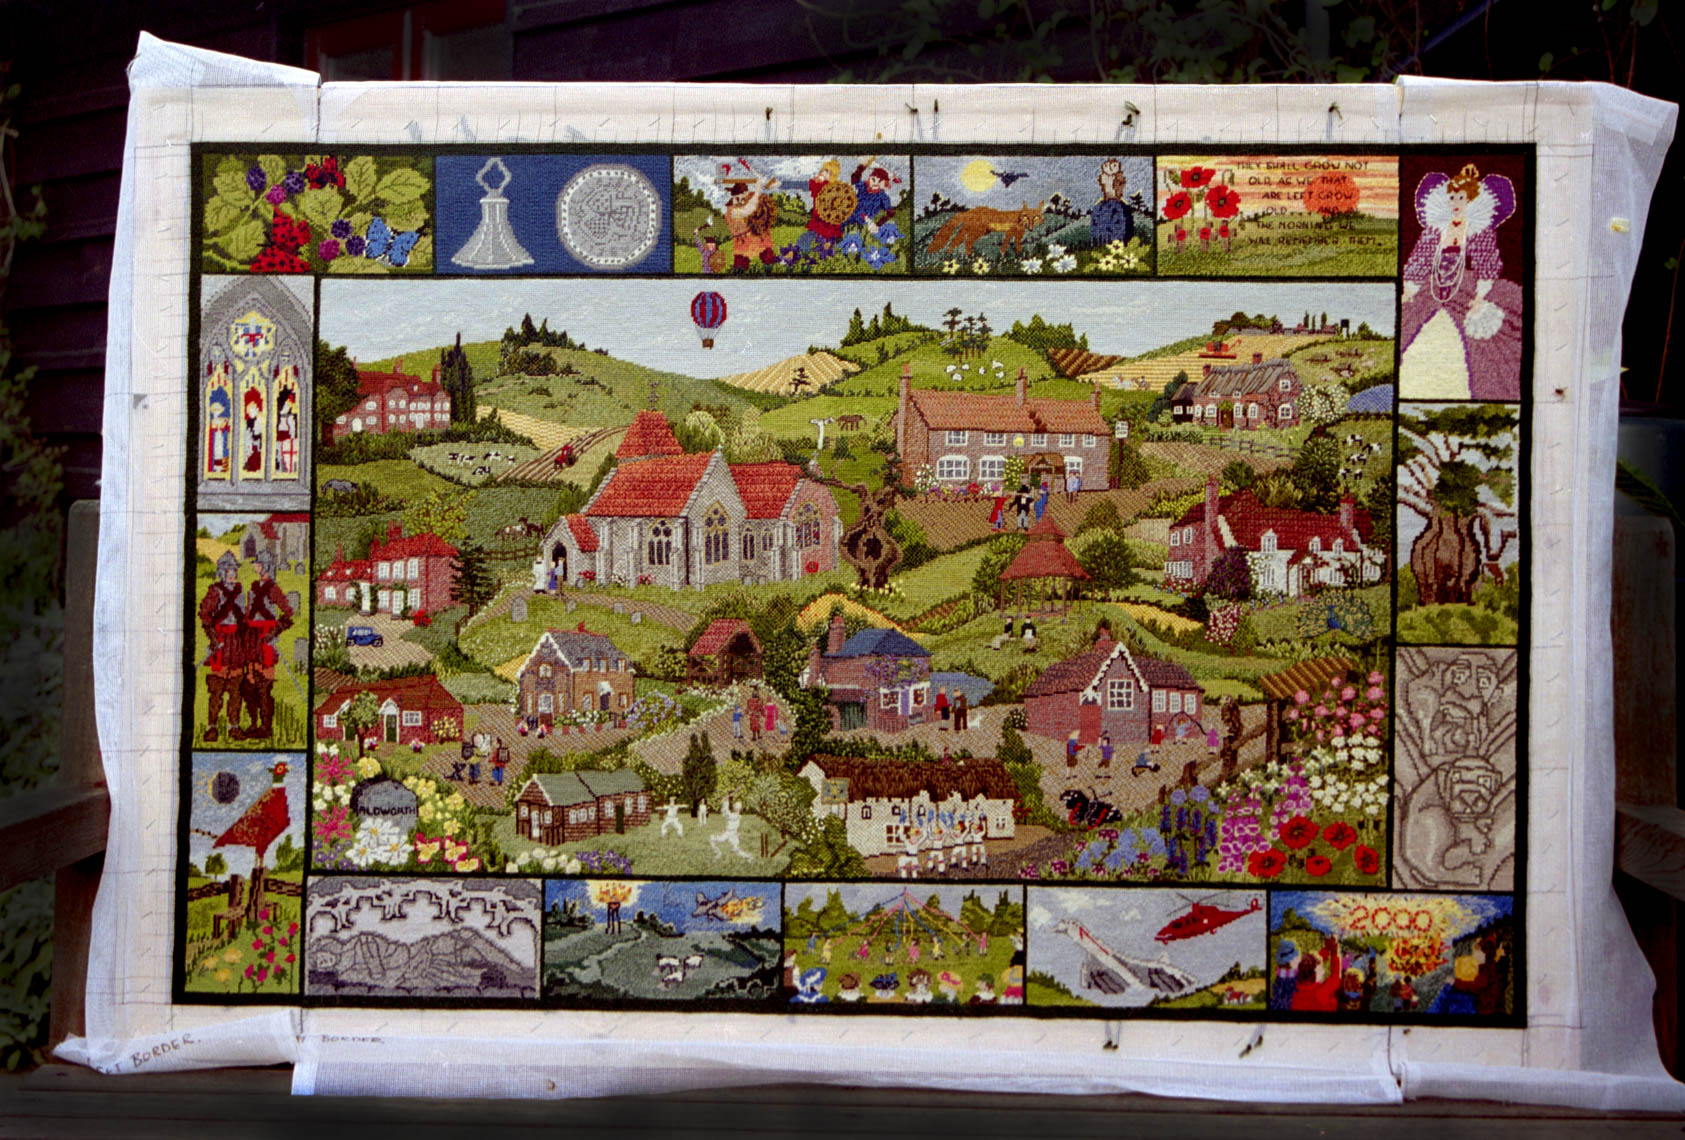 Aldworth Millennium Tapestry